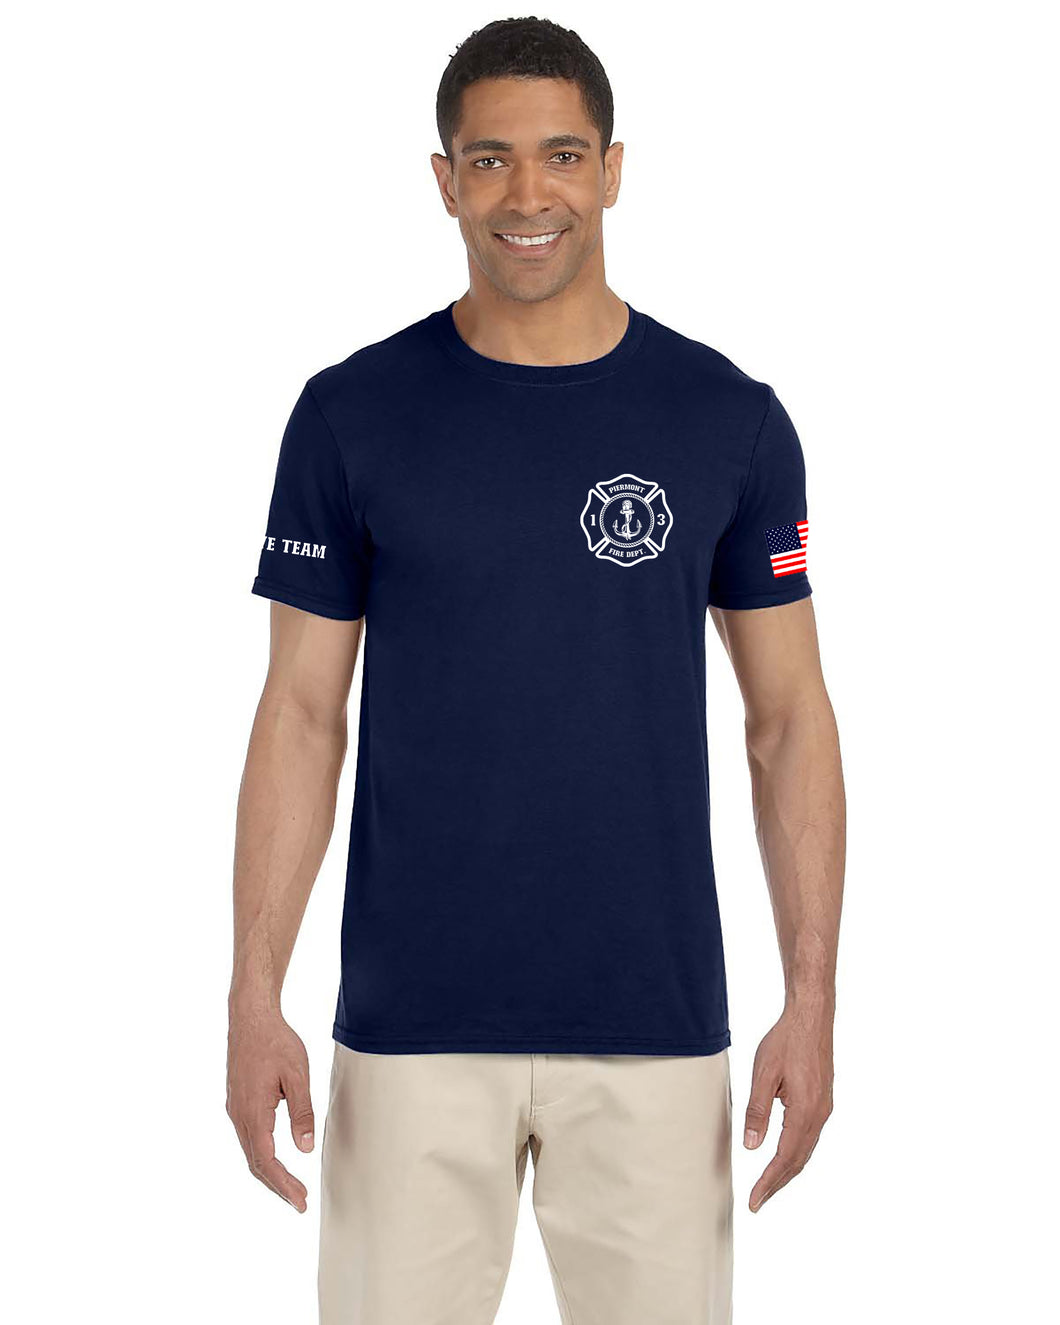 Piermont FD Dive Team T Shirt